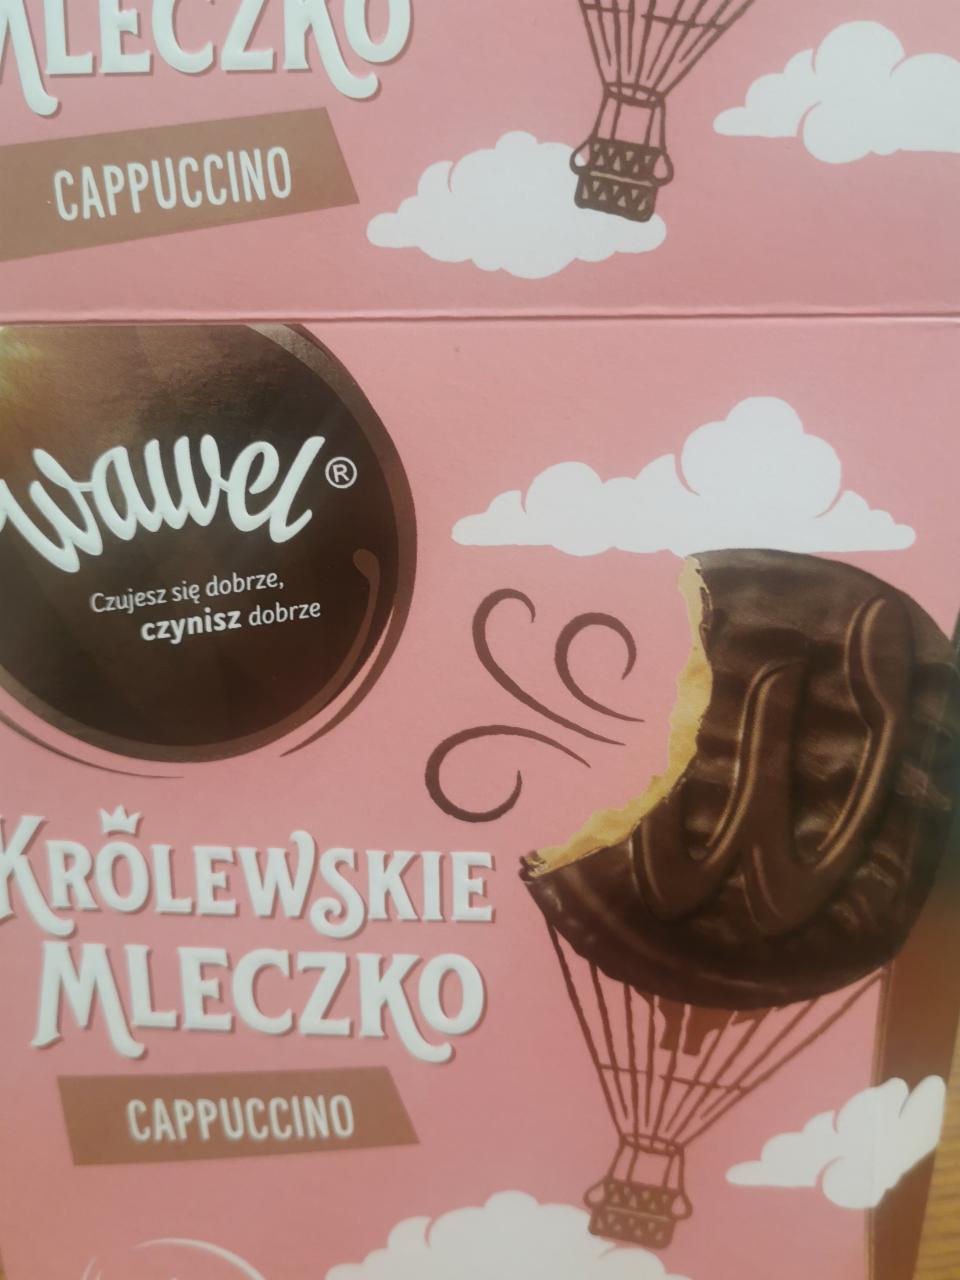 Фото - Молочко зі смаком капучіно Королівське Królewskie Wawel